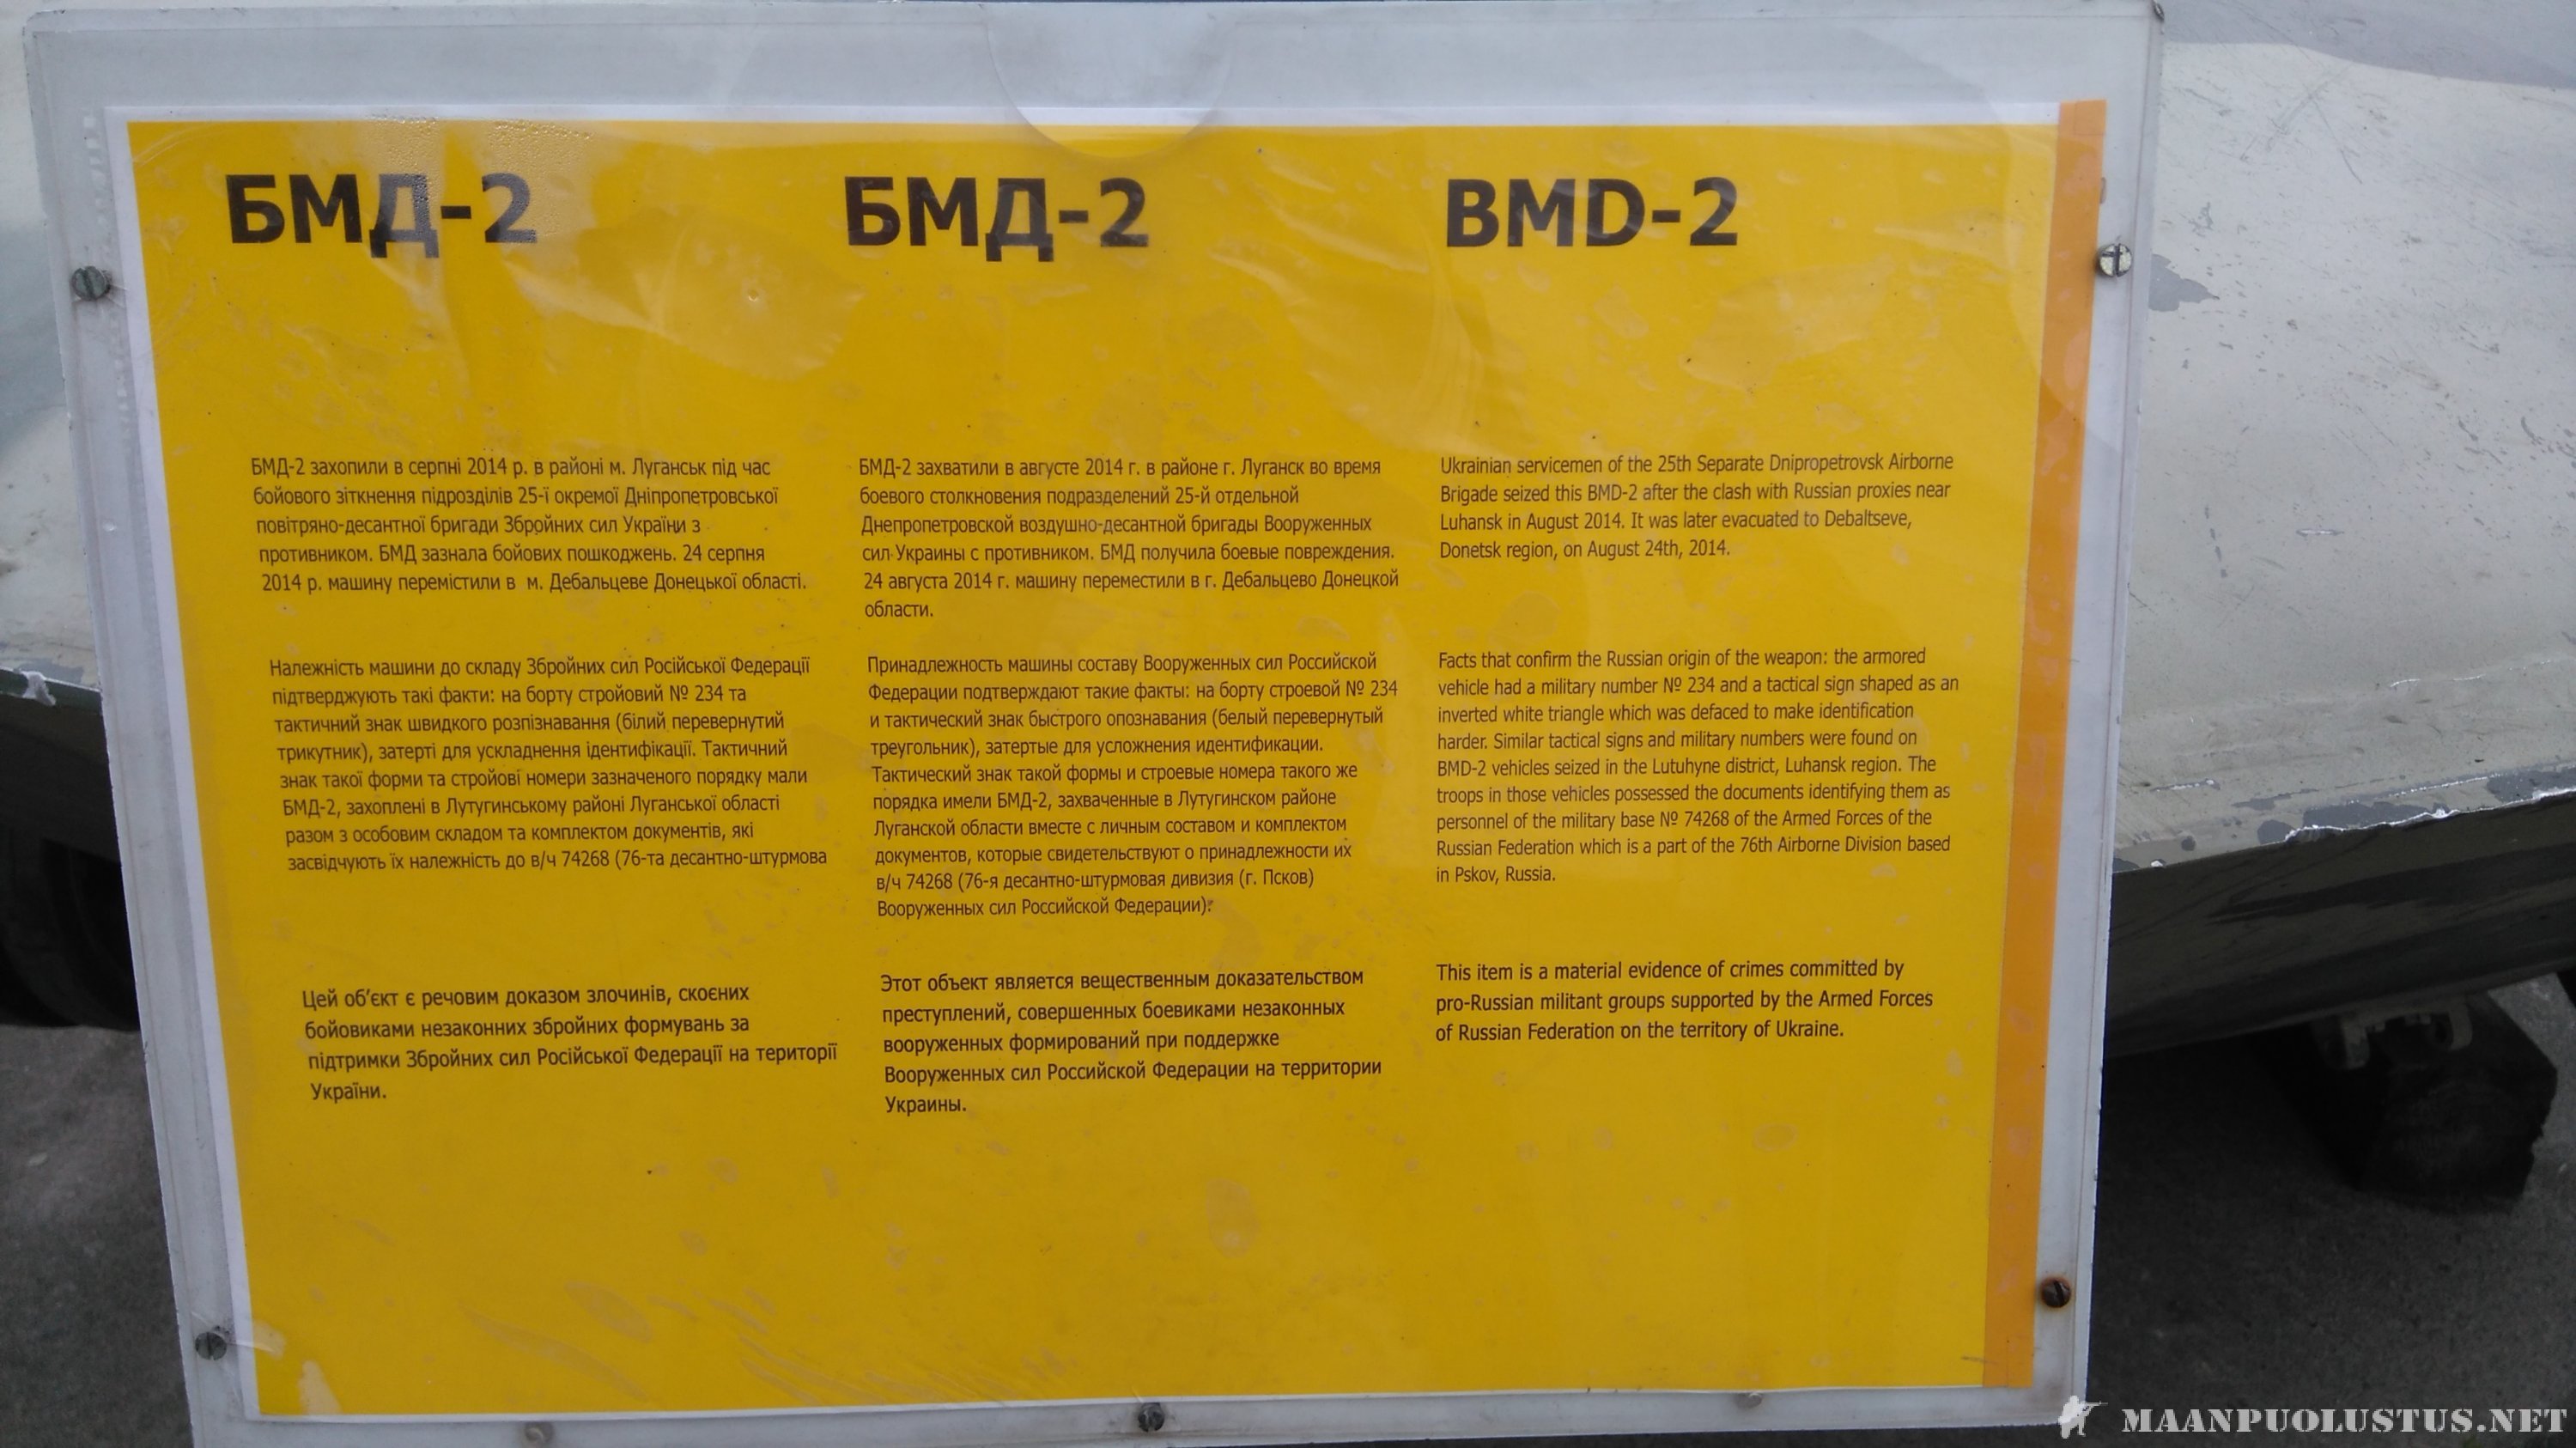 BMD-2/kuvaus